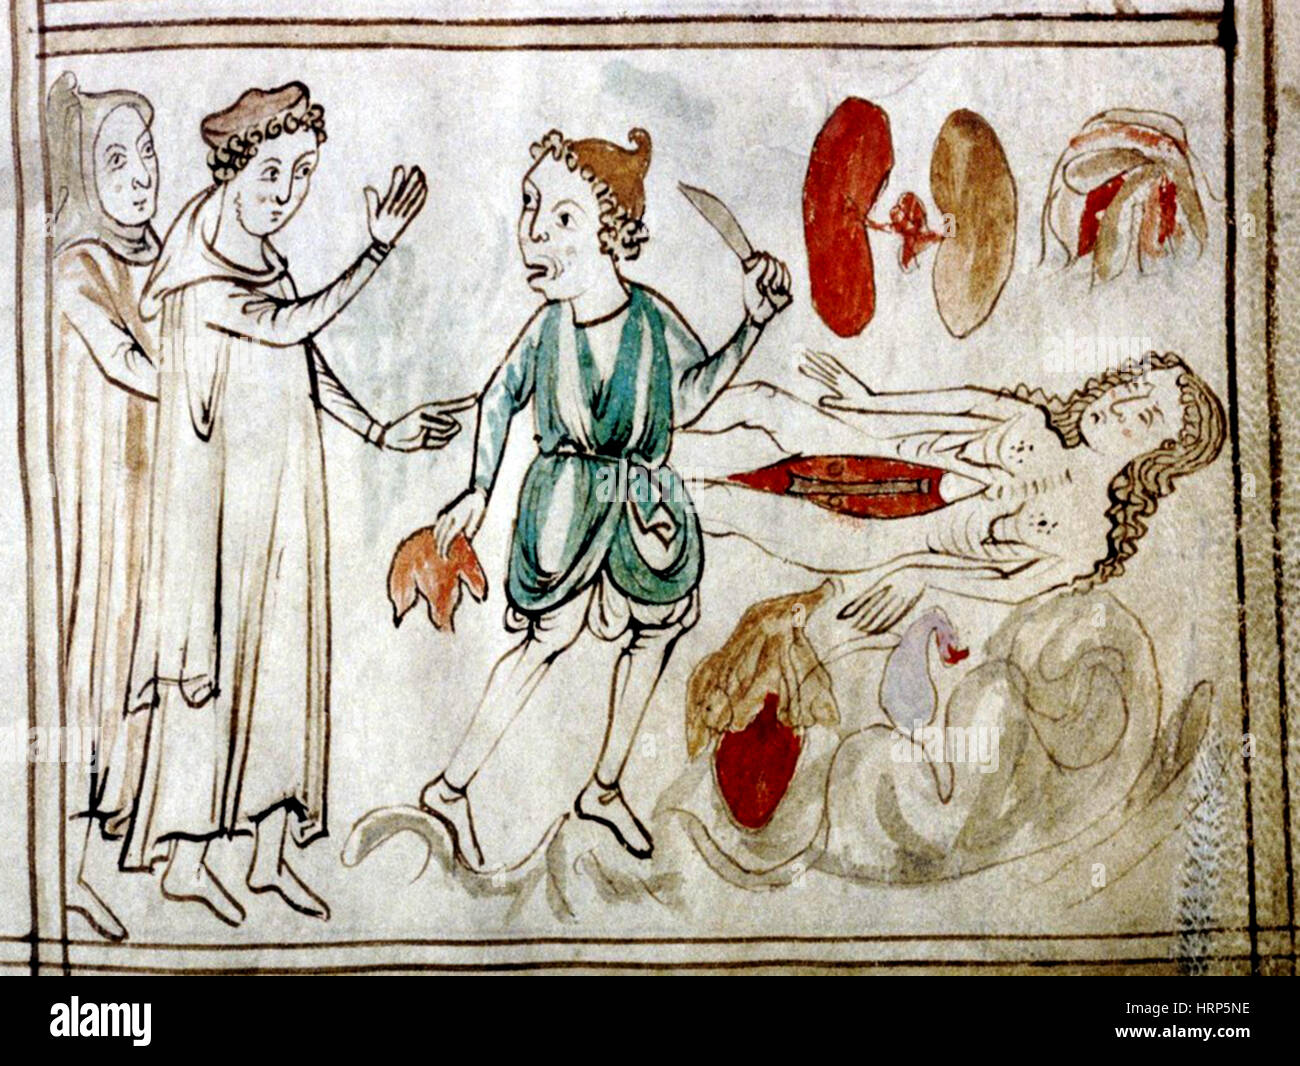 La dissection de cadavre, 13e siècle Banque D'Images